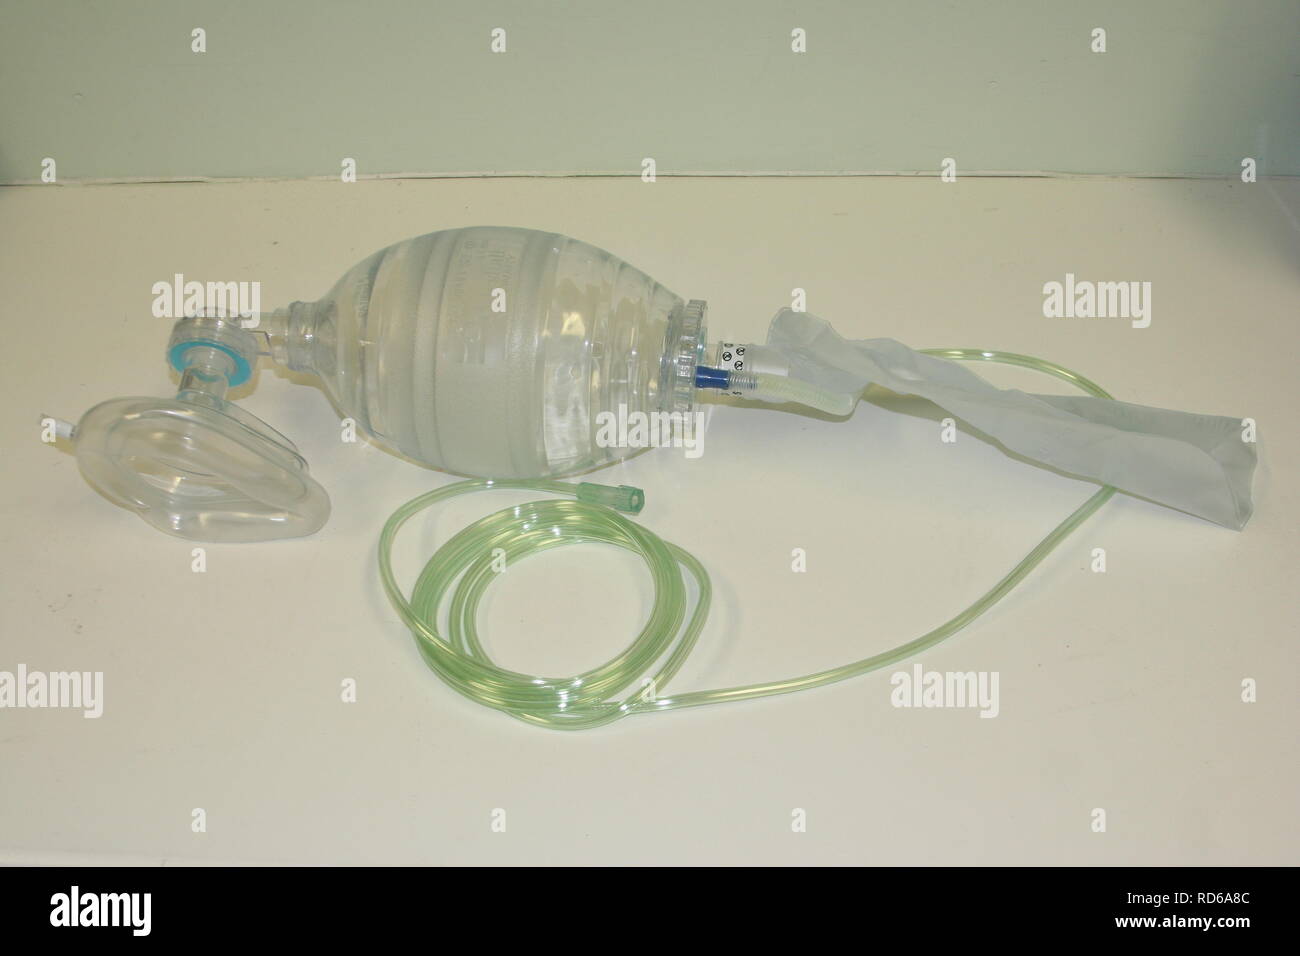 Ambu“-Beutel mit selbstaufblasender Maske und Sauerstoffbehälter